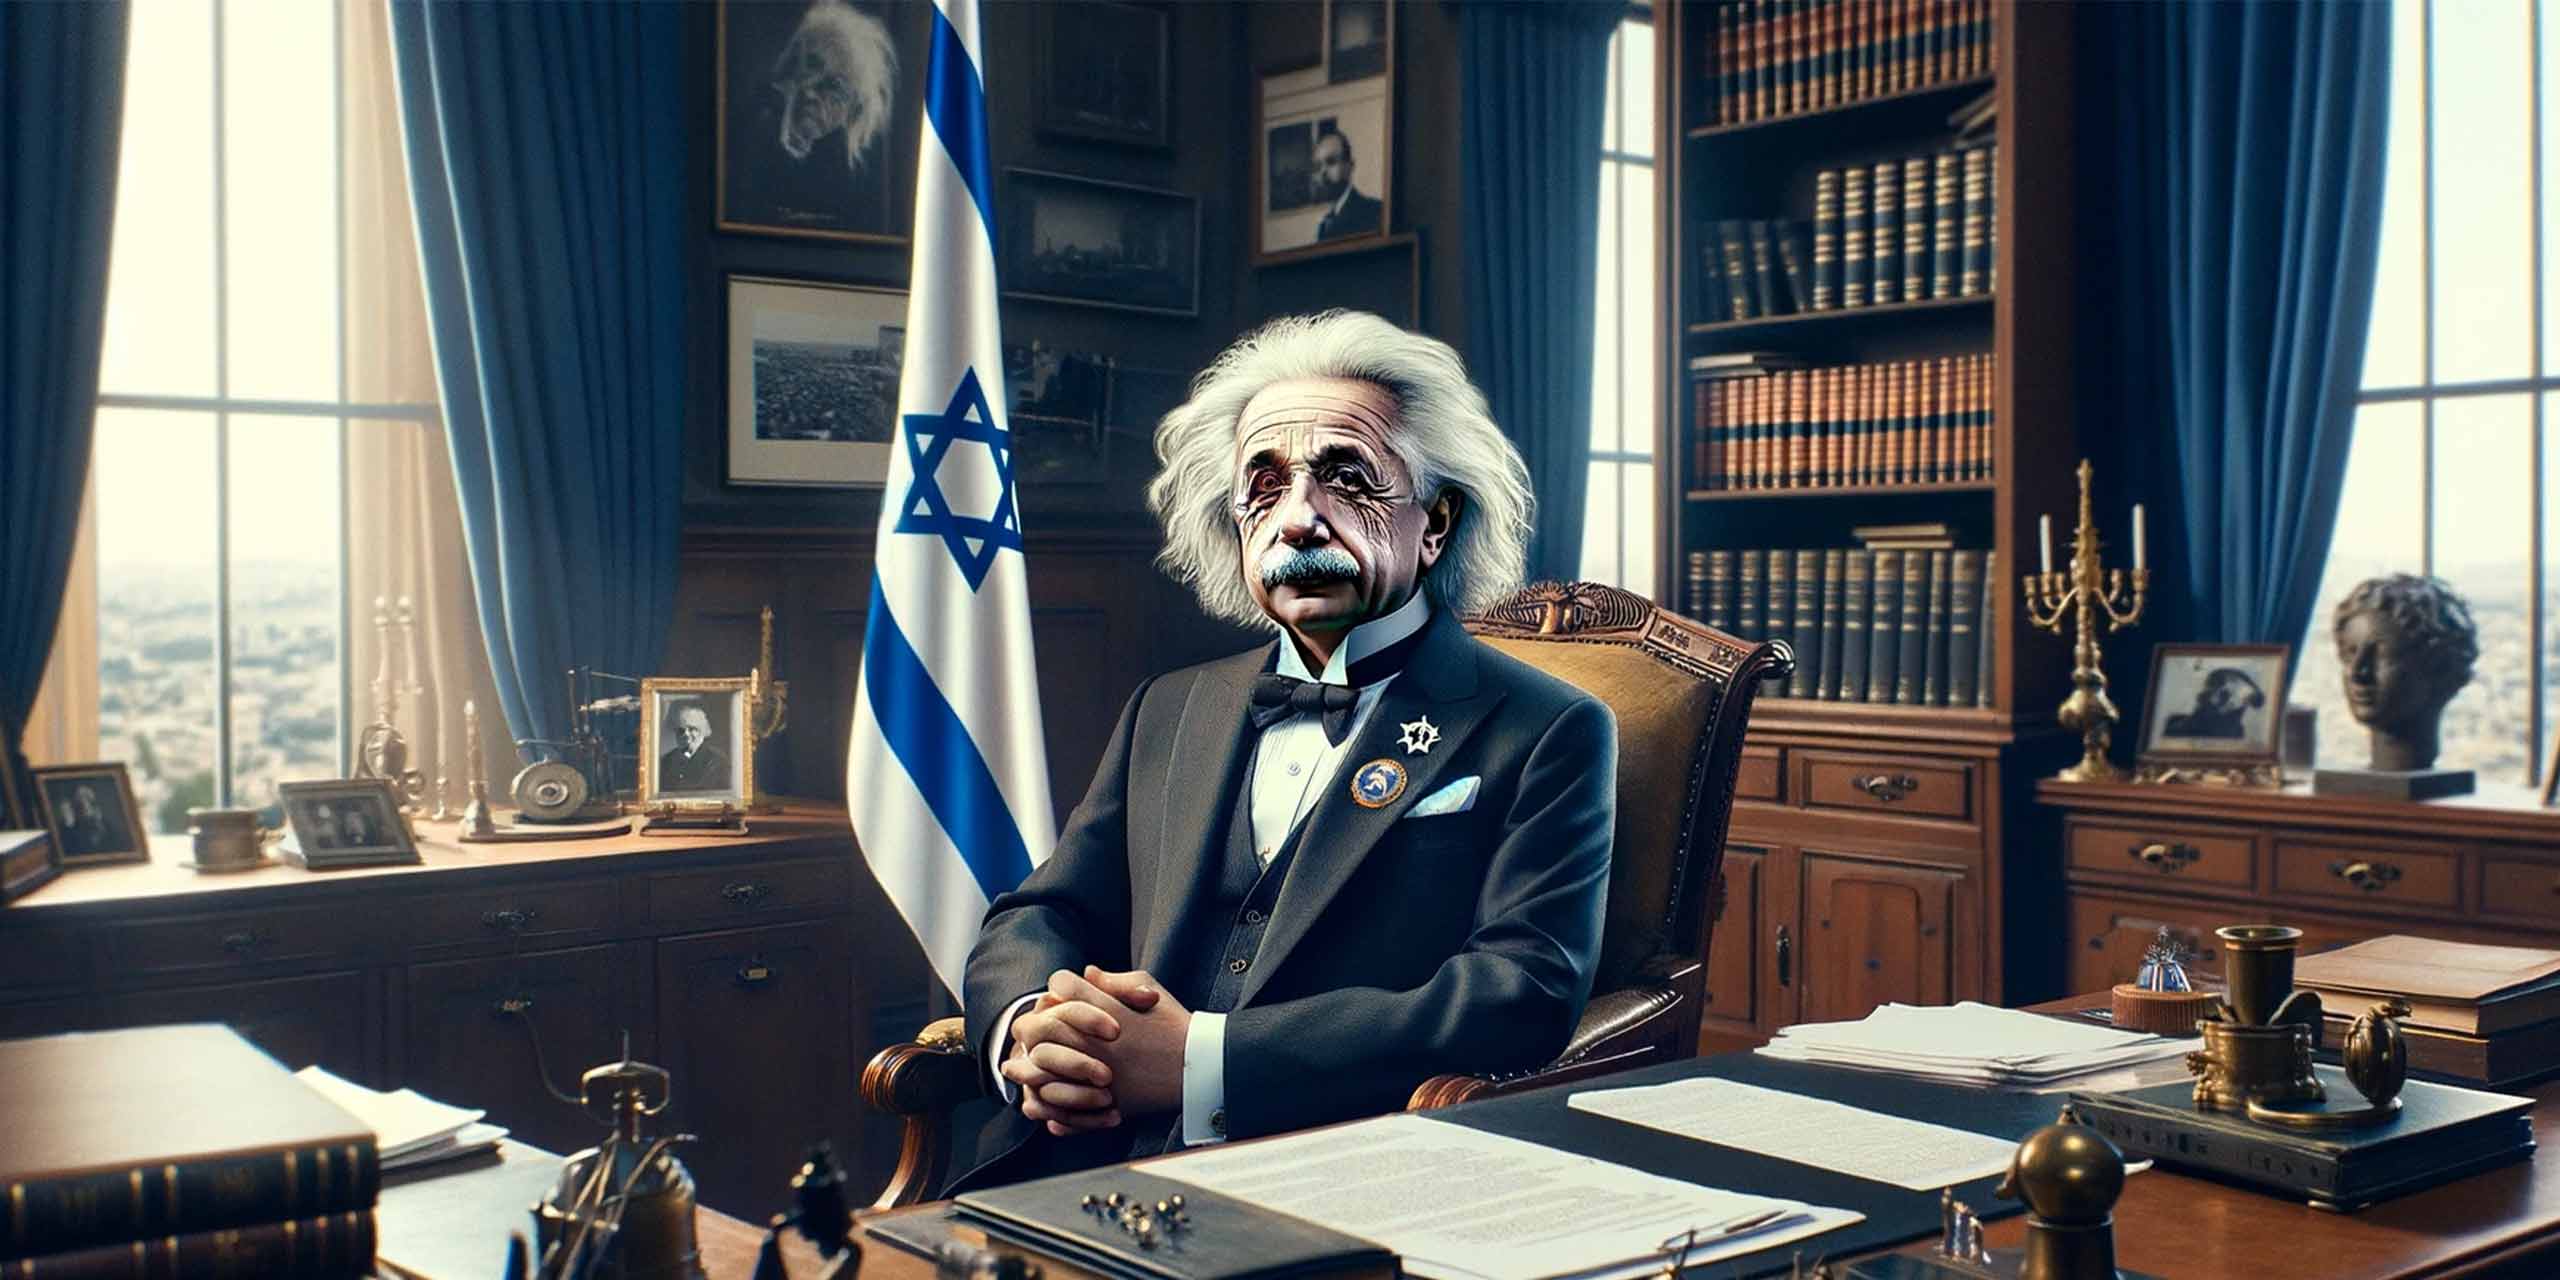 Albert Einstein'a: "İsrail'in Cumhurbaşkanı Ol!" Teklifi Yapılması